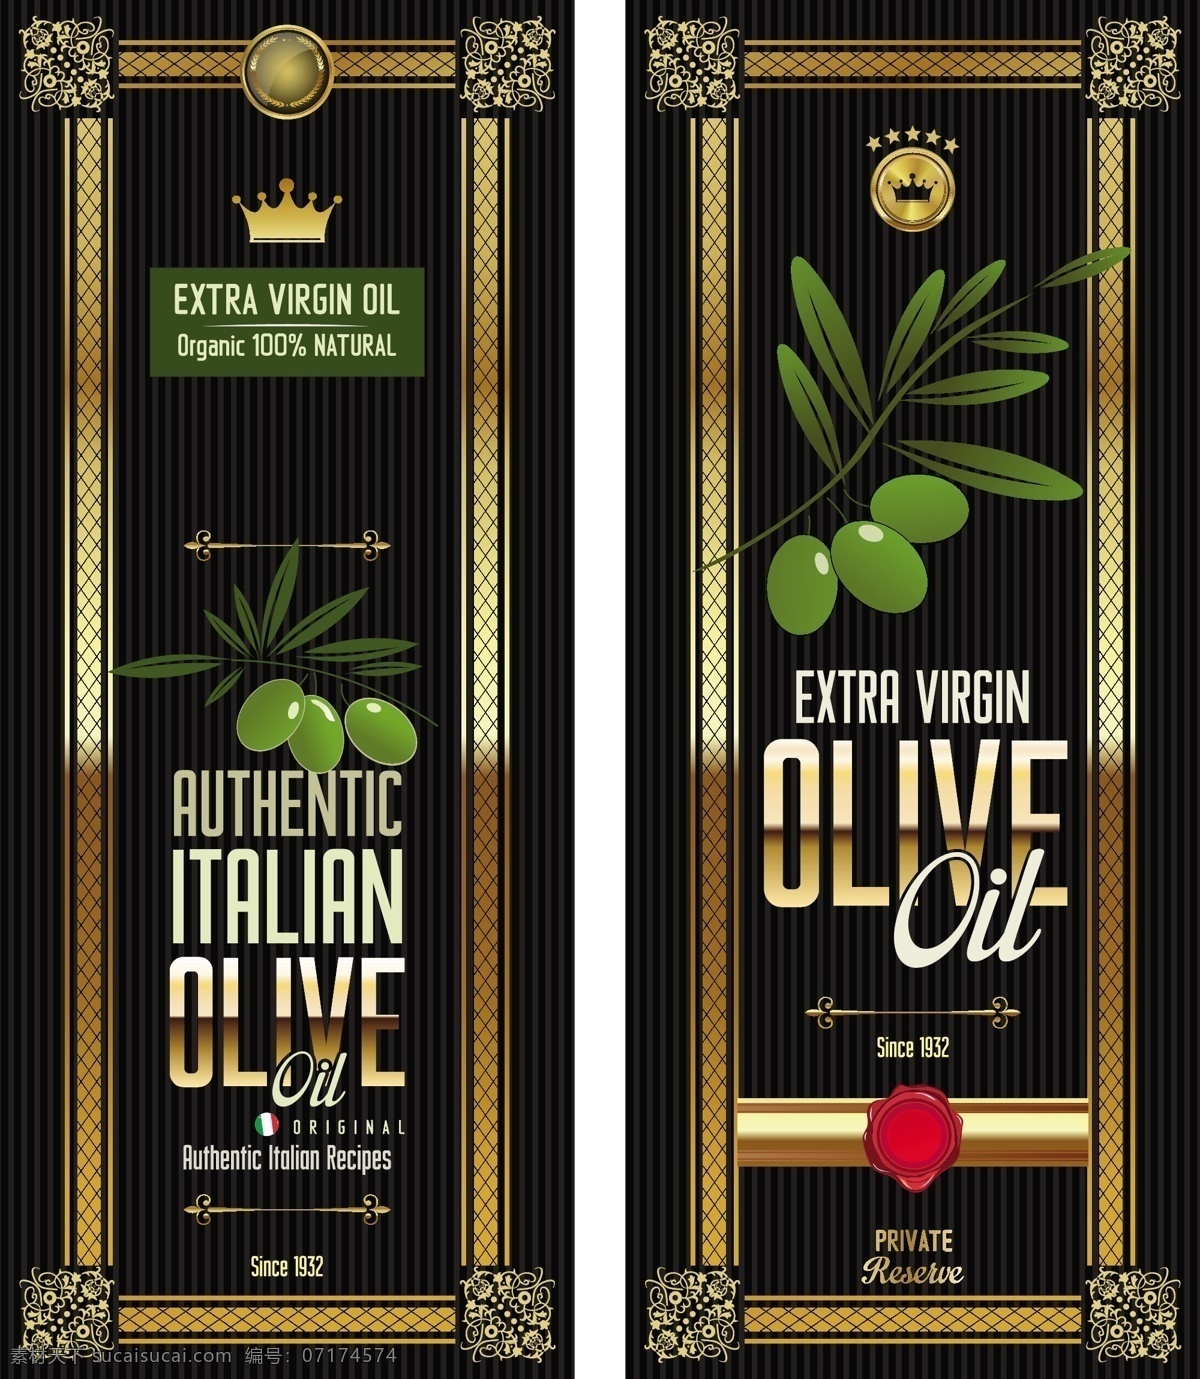 橄榄油横幅 橄榄橄榄油 墨迹 木纹 木板 绿色 橄榄 橄榄油 营养 健康 手绘 背景 矢量 橄榄油条幅 健康食用油 橄榄油广告 橄榄油宣传